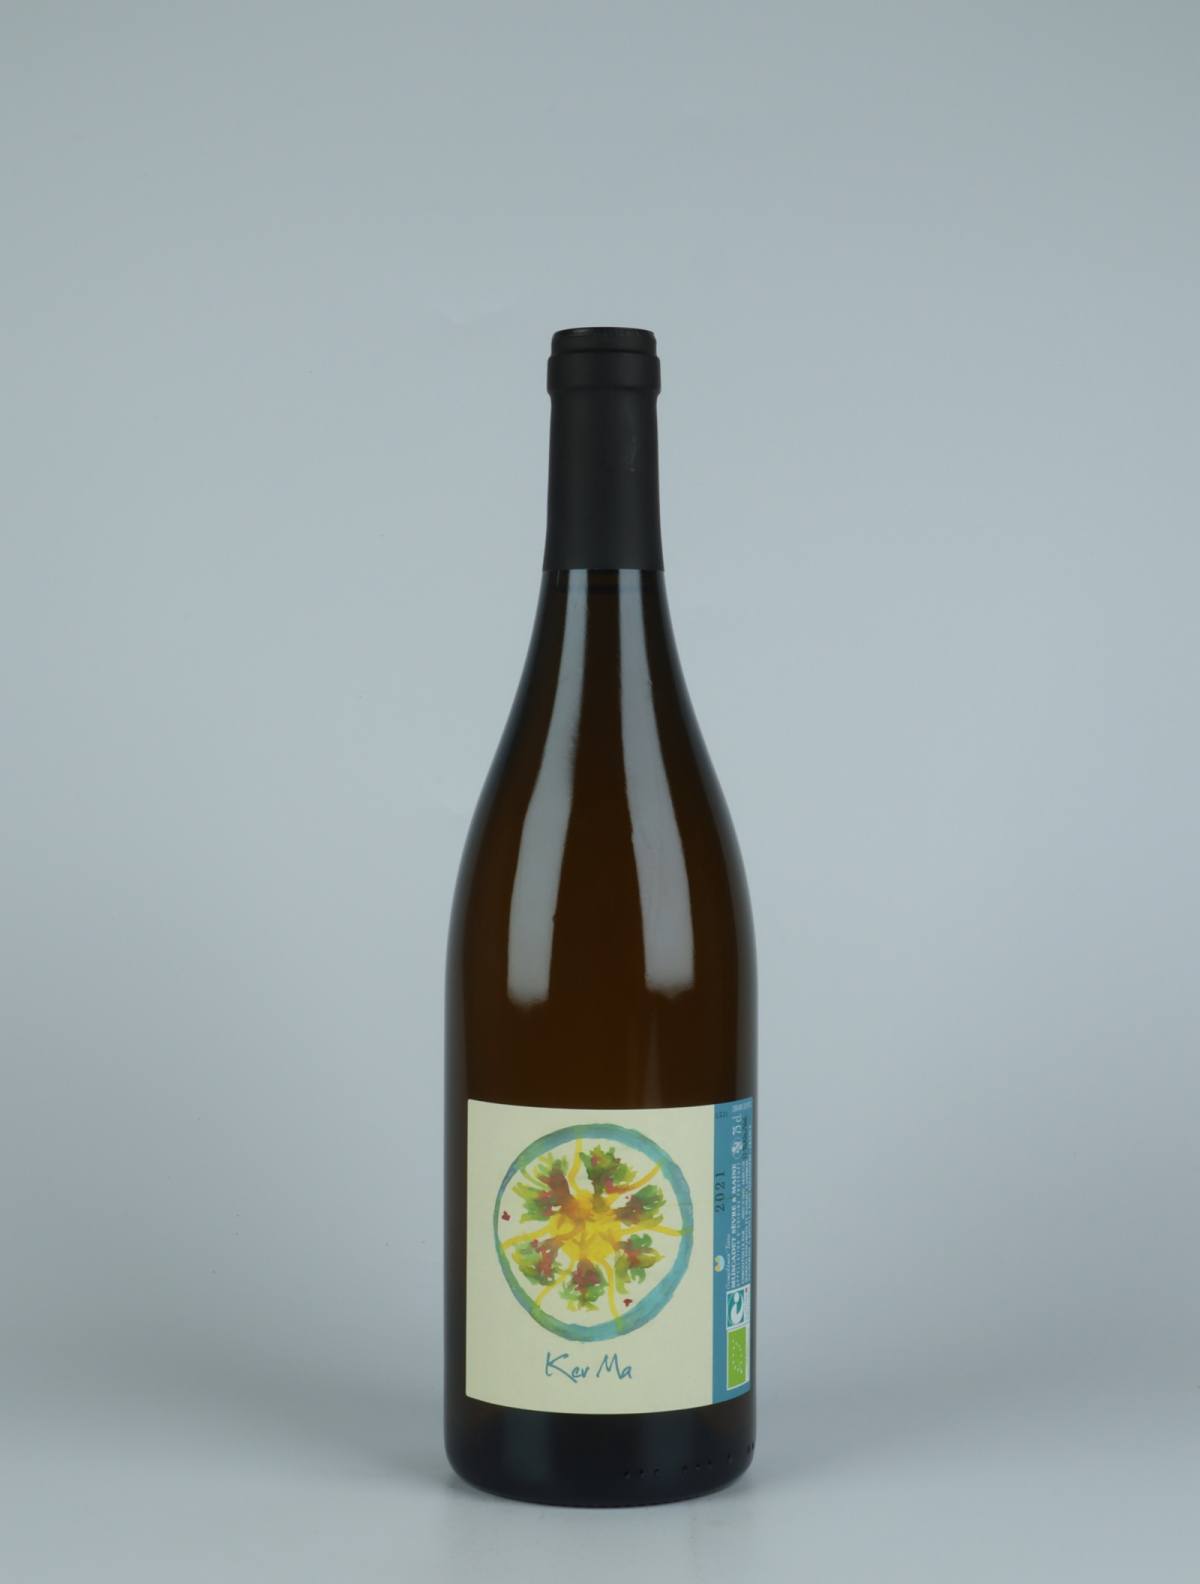 A bottle 2021 Ker Ma White wine from Complémen'terre, Loire in France